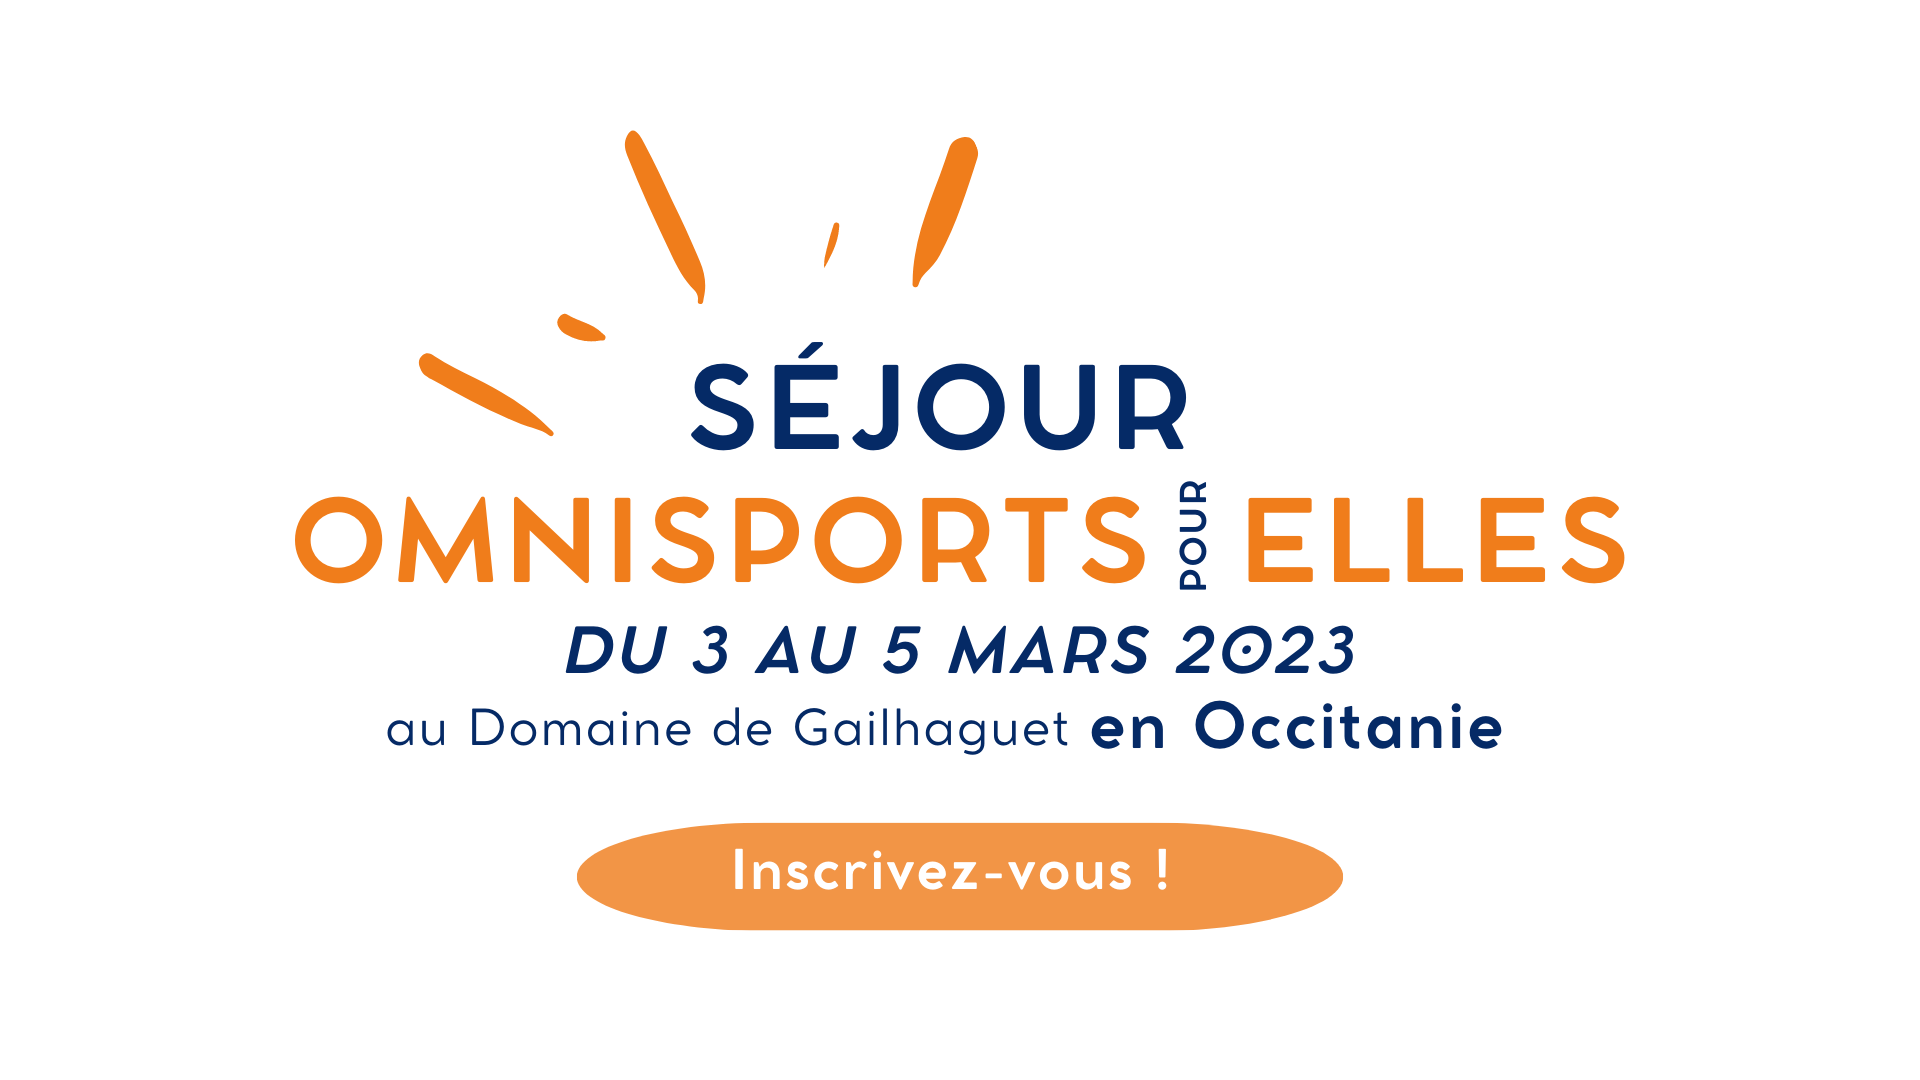 Visuel présentant le séjour Omnisports pour Elles de la fédération française des clubs omnisports